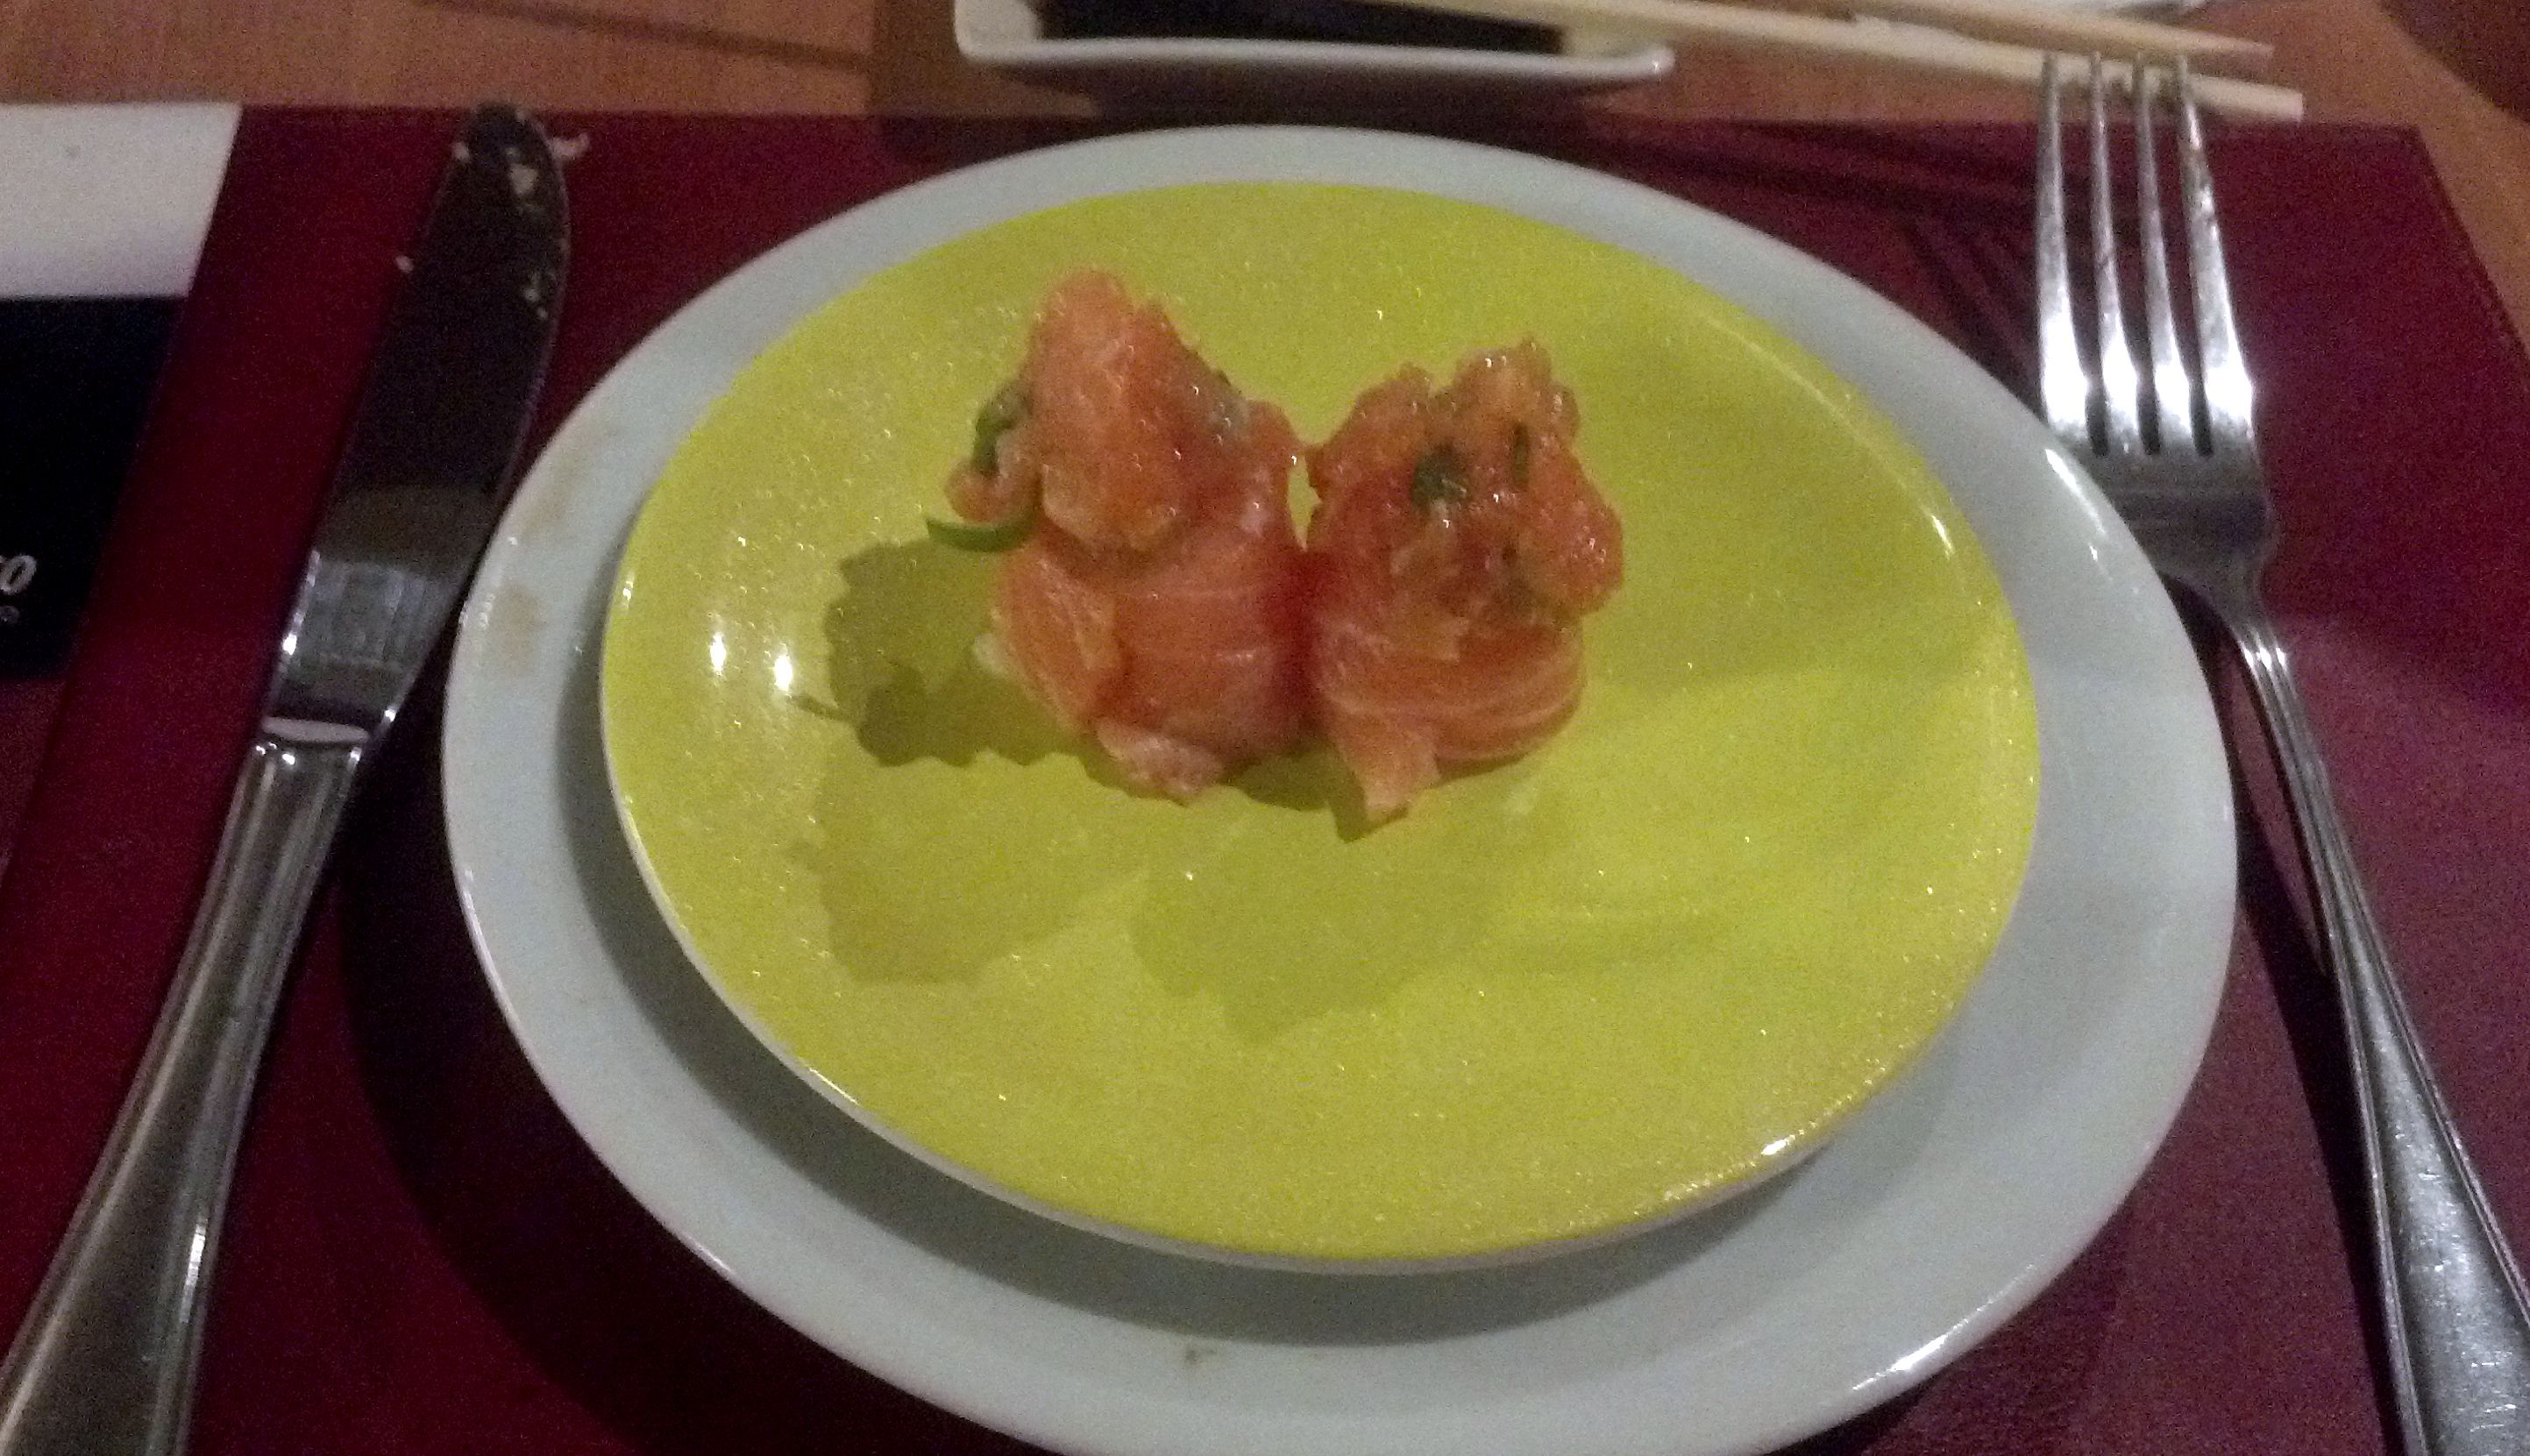 Soho Stera - Sushi - Onde Comer em Salvador - Bares e restaurantes em Salvador -  Restaurantes japoneses em Salvador